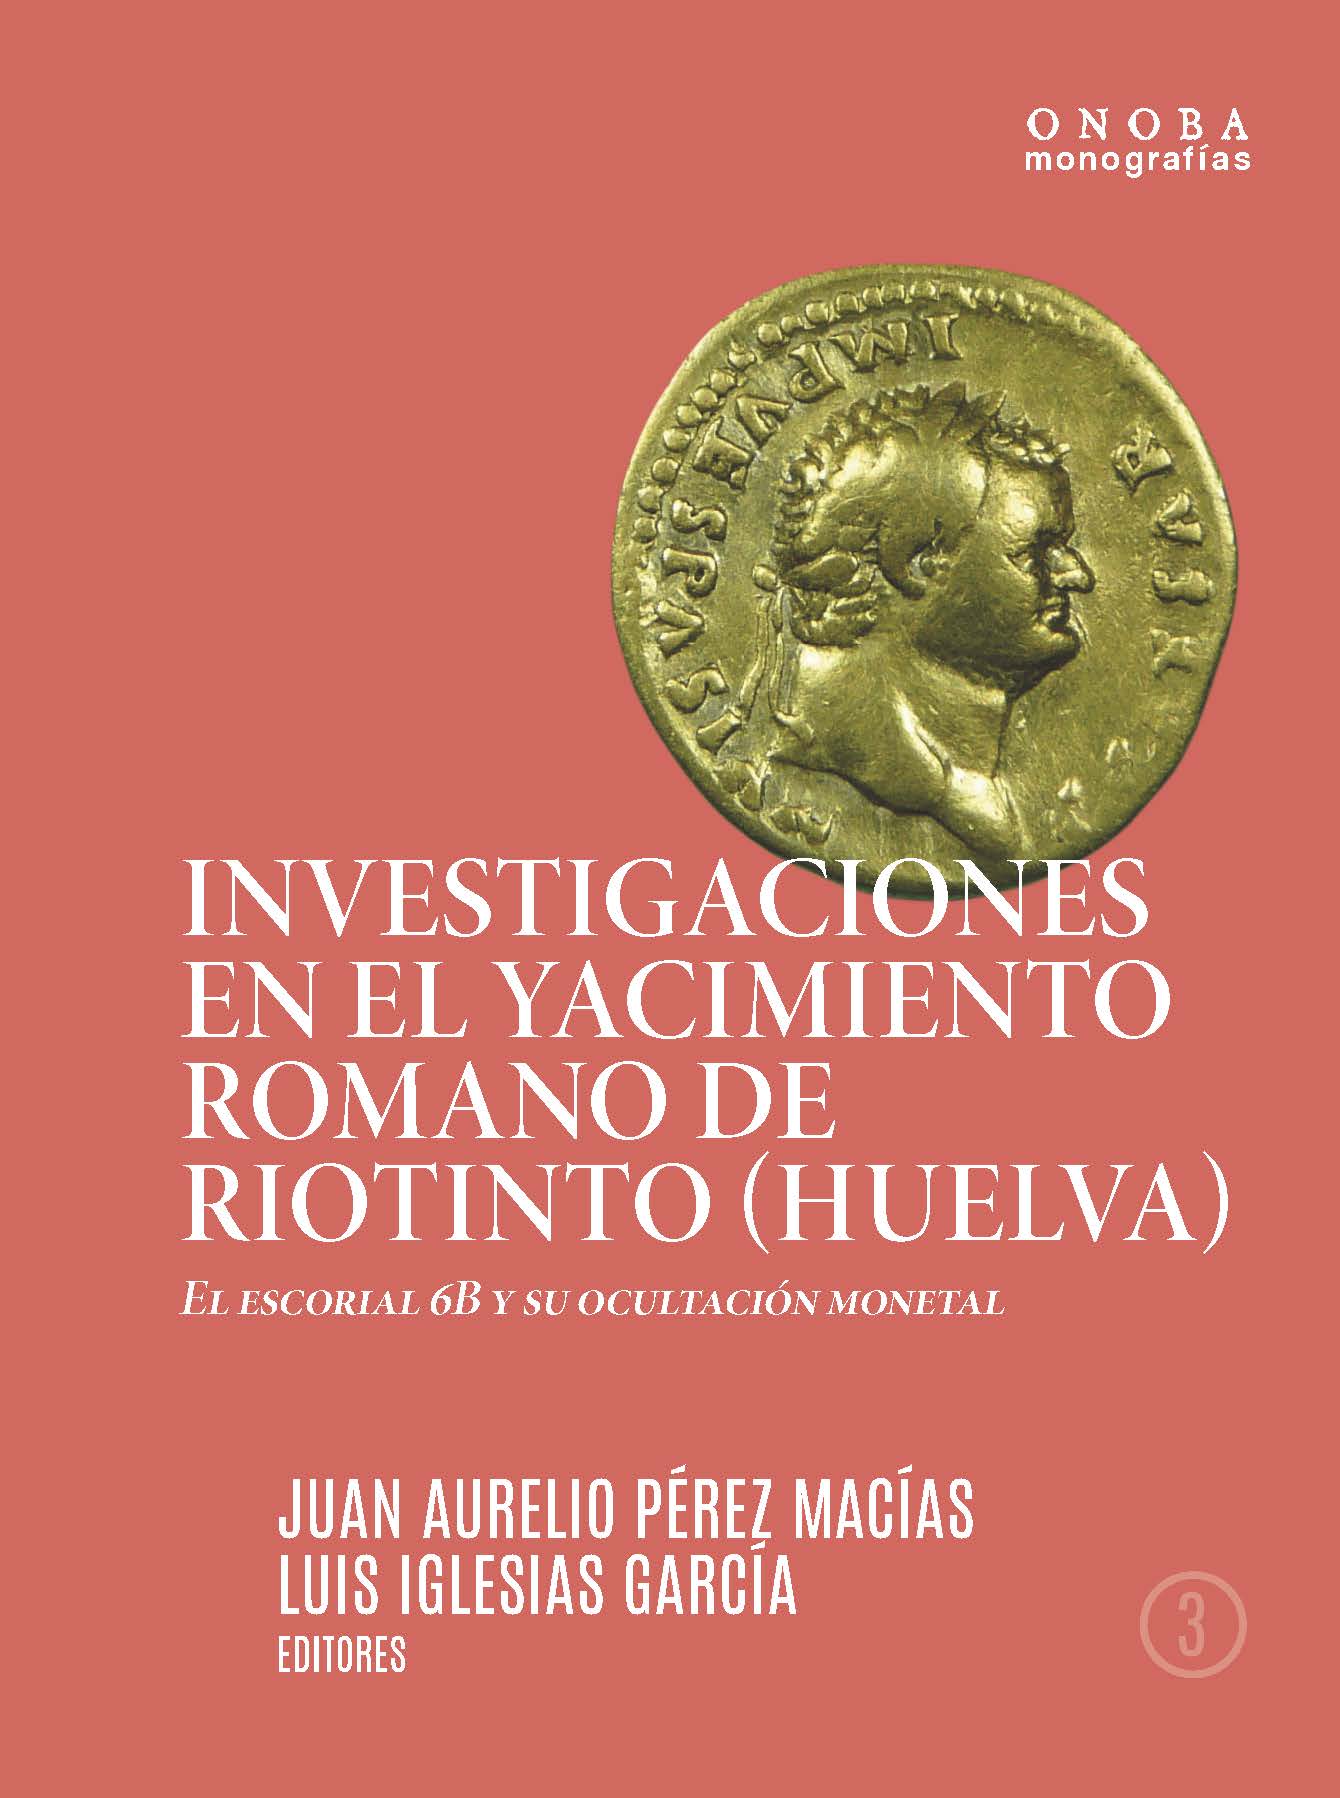 Investigaciones en el yacimiento romano de Riotinto (Huelva)